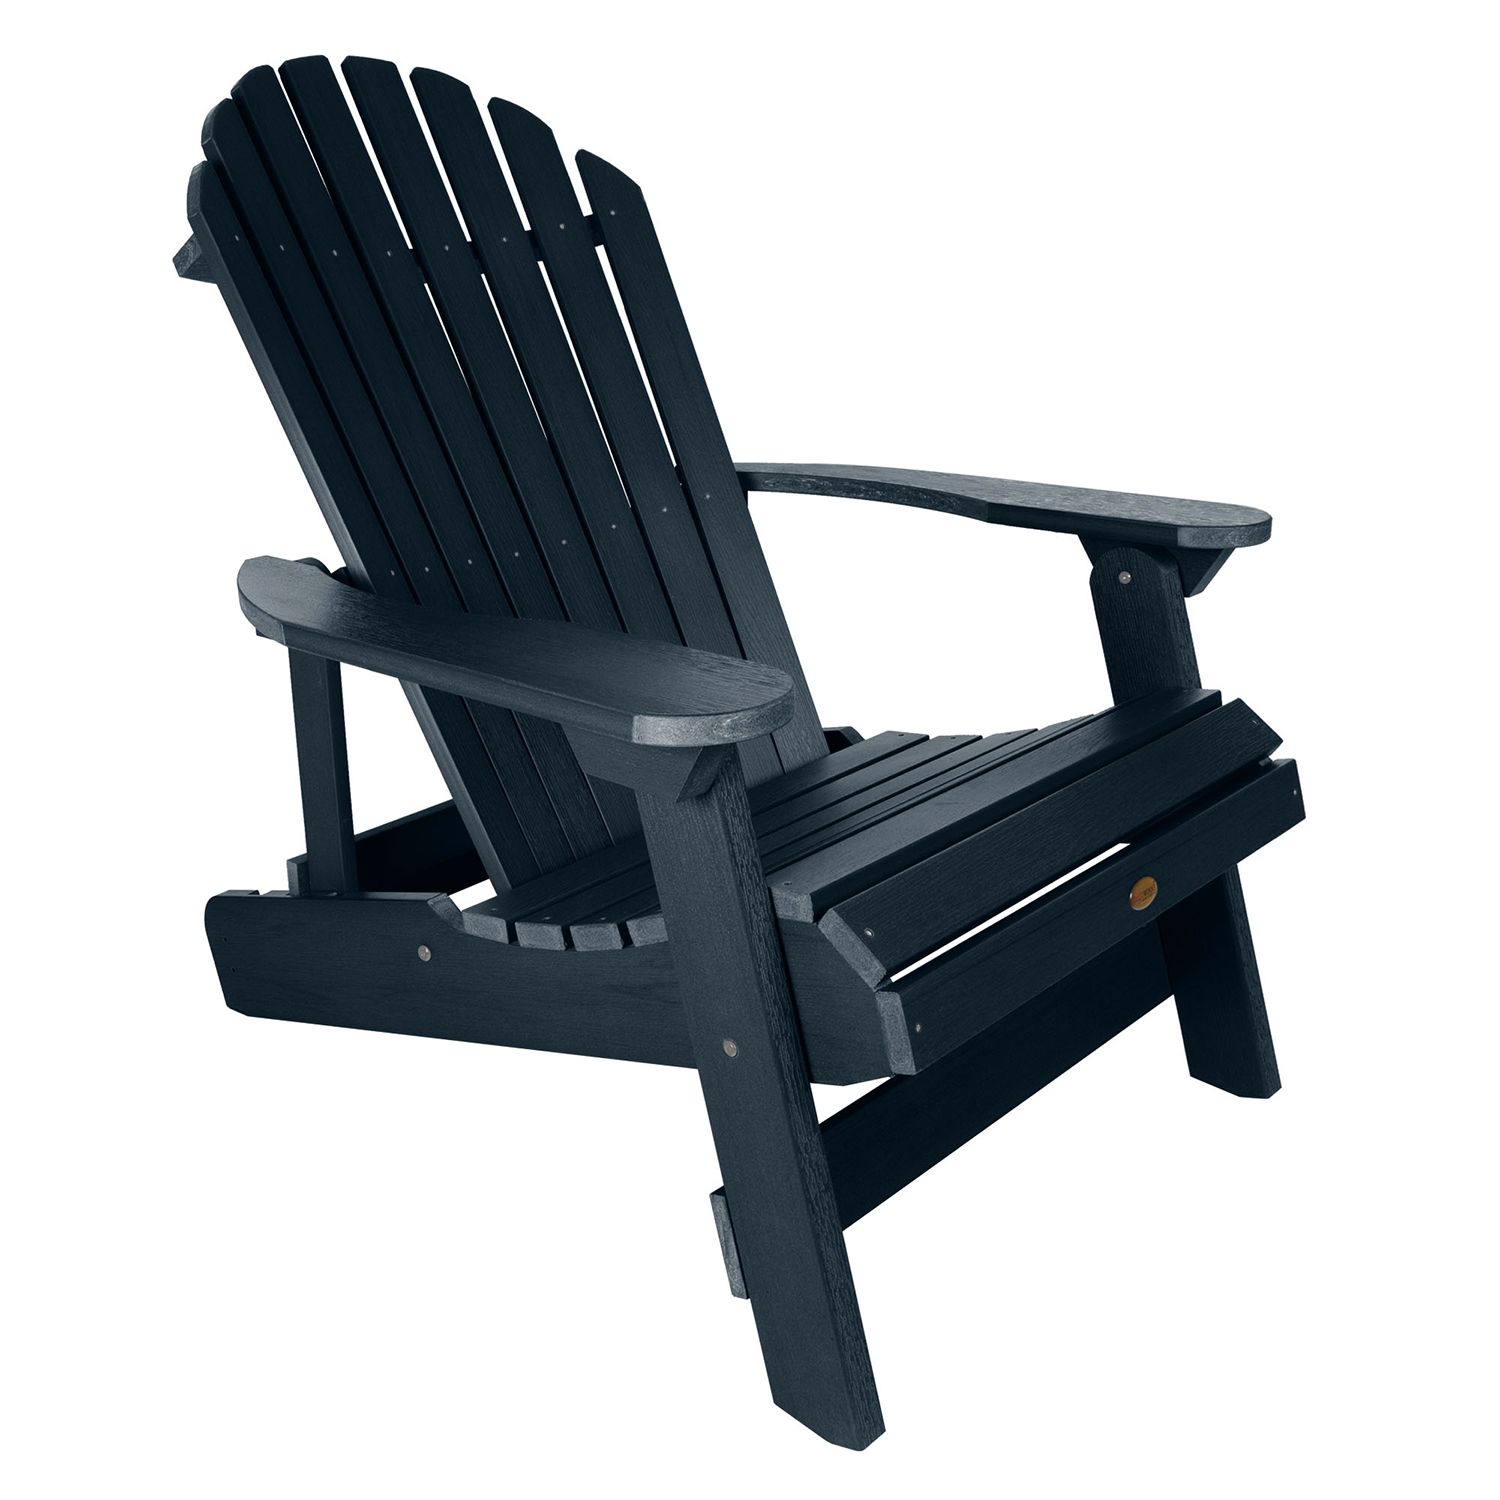 Image for highwood Highwood King Hamilton Folding & Reclining Adirondack Chair at Kohl's.